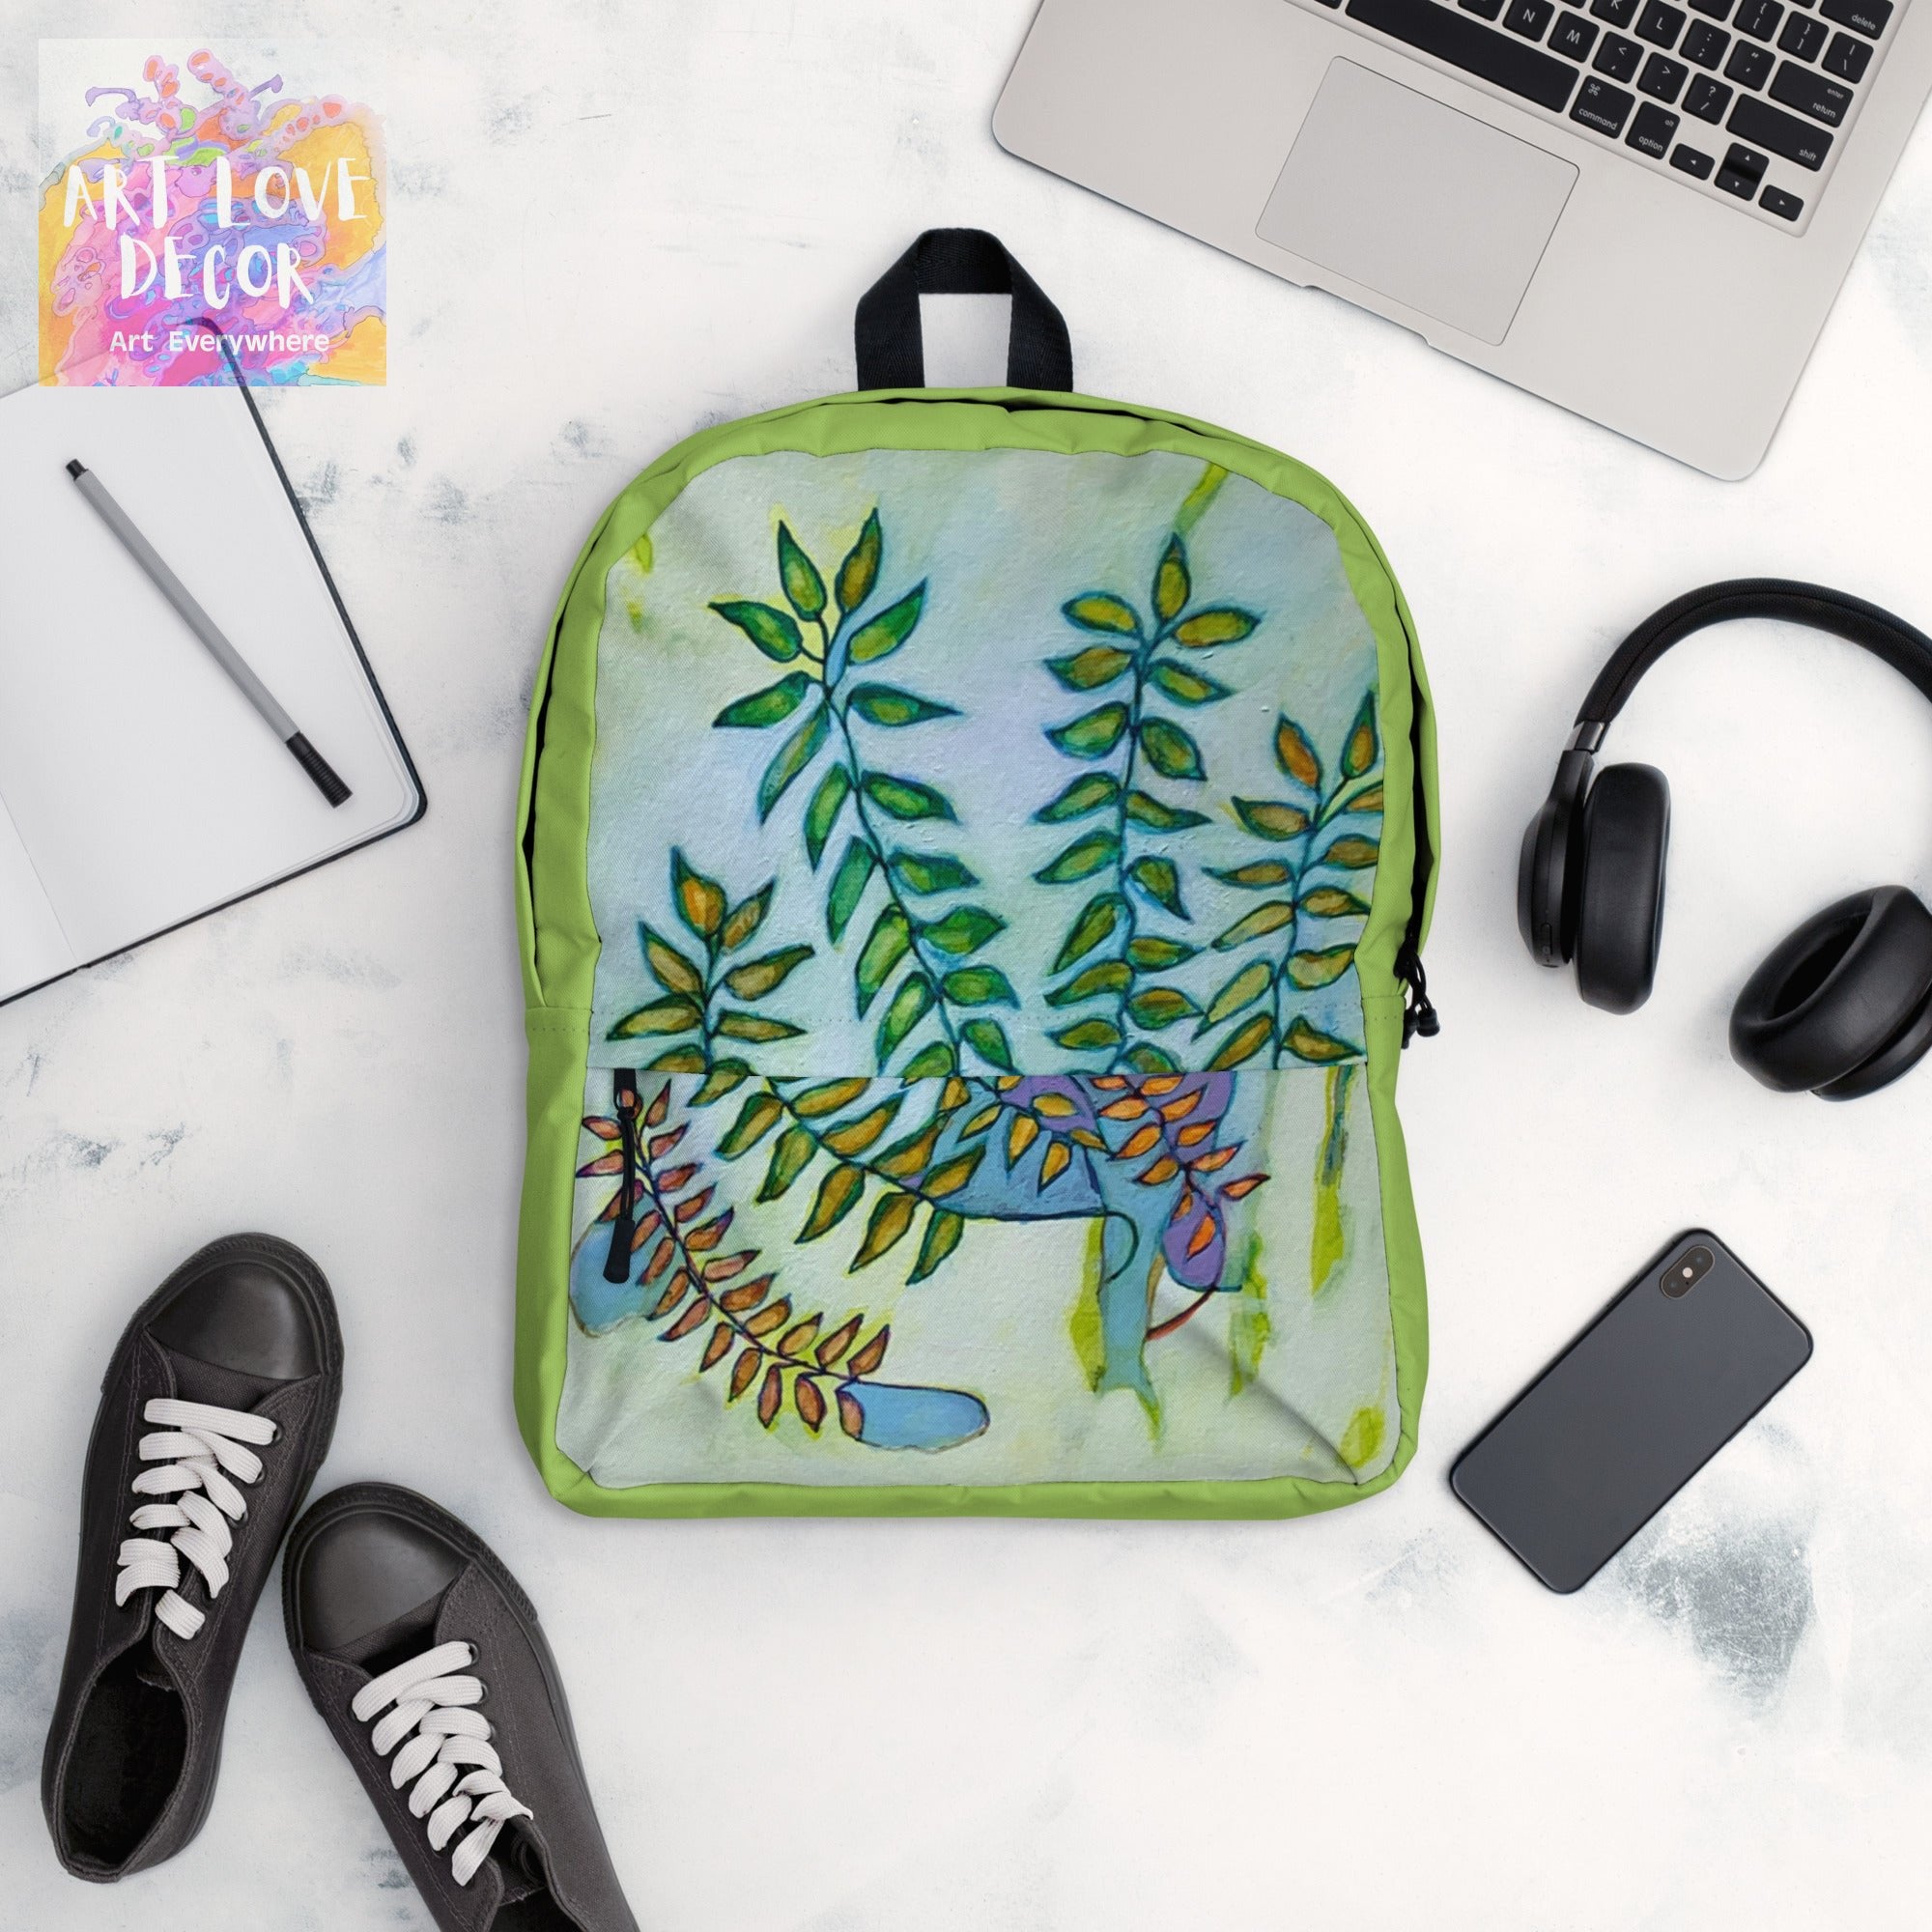 Green Leaves Backpack - Art Love Decor